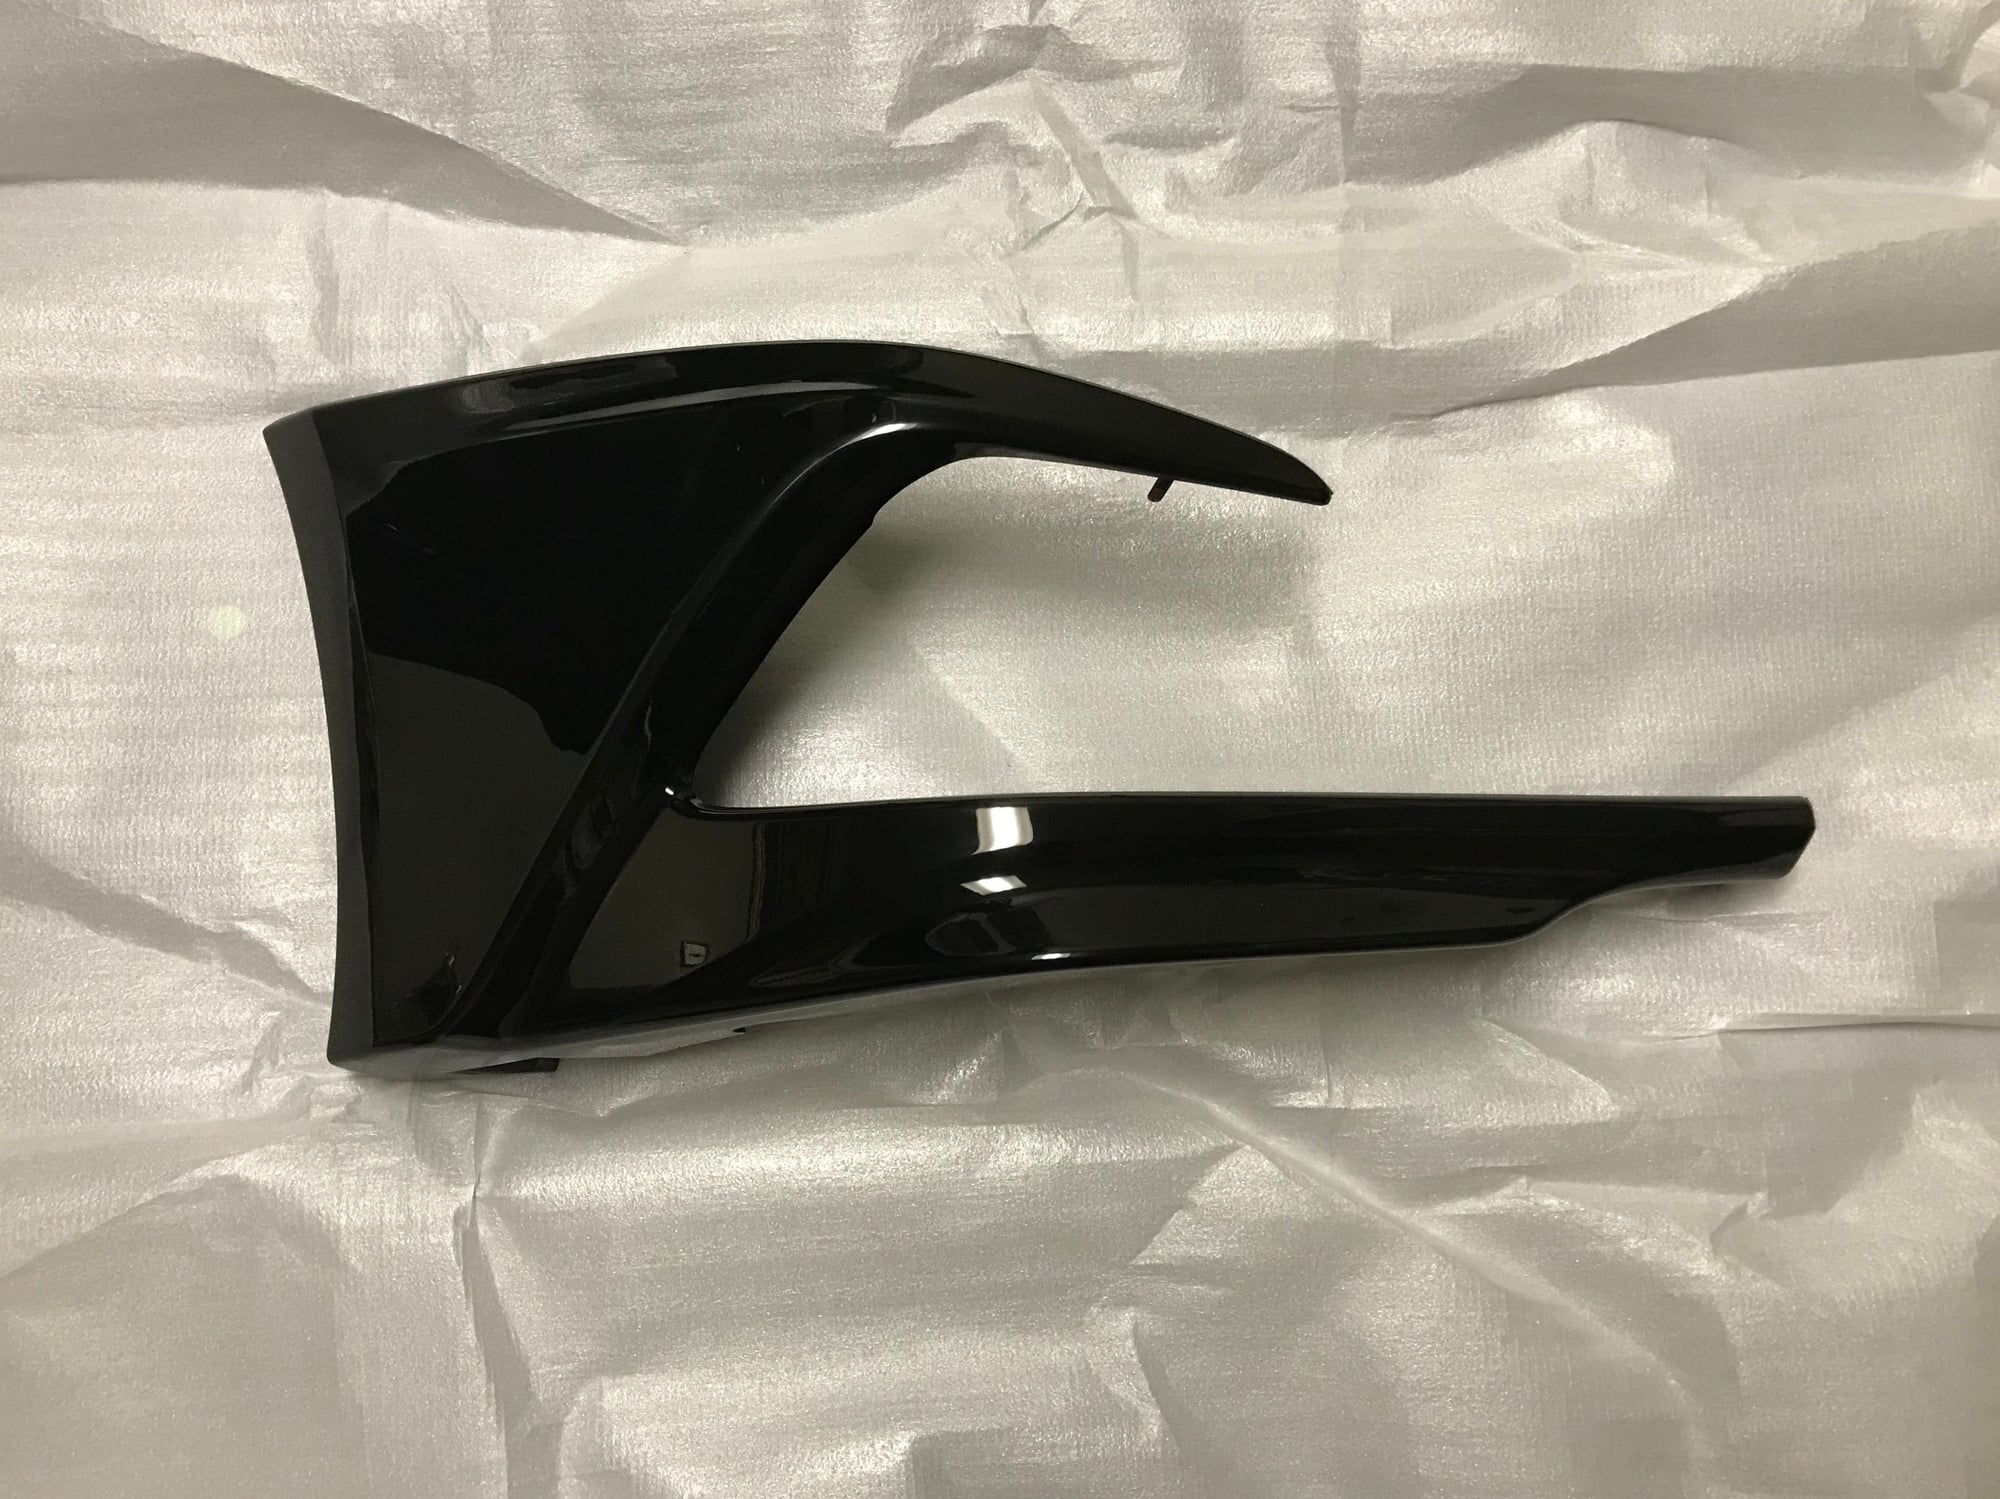 Exterior Body Parts - FS: Acura TLX Lip Kit OEM - New - 2014 to 2017 Acura TLX - New York, NY 10468, United States